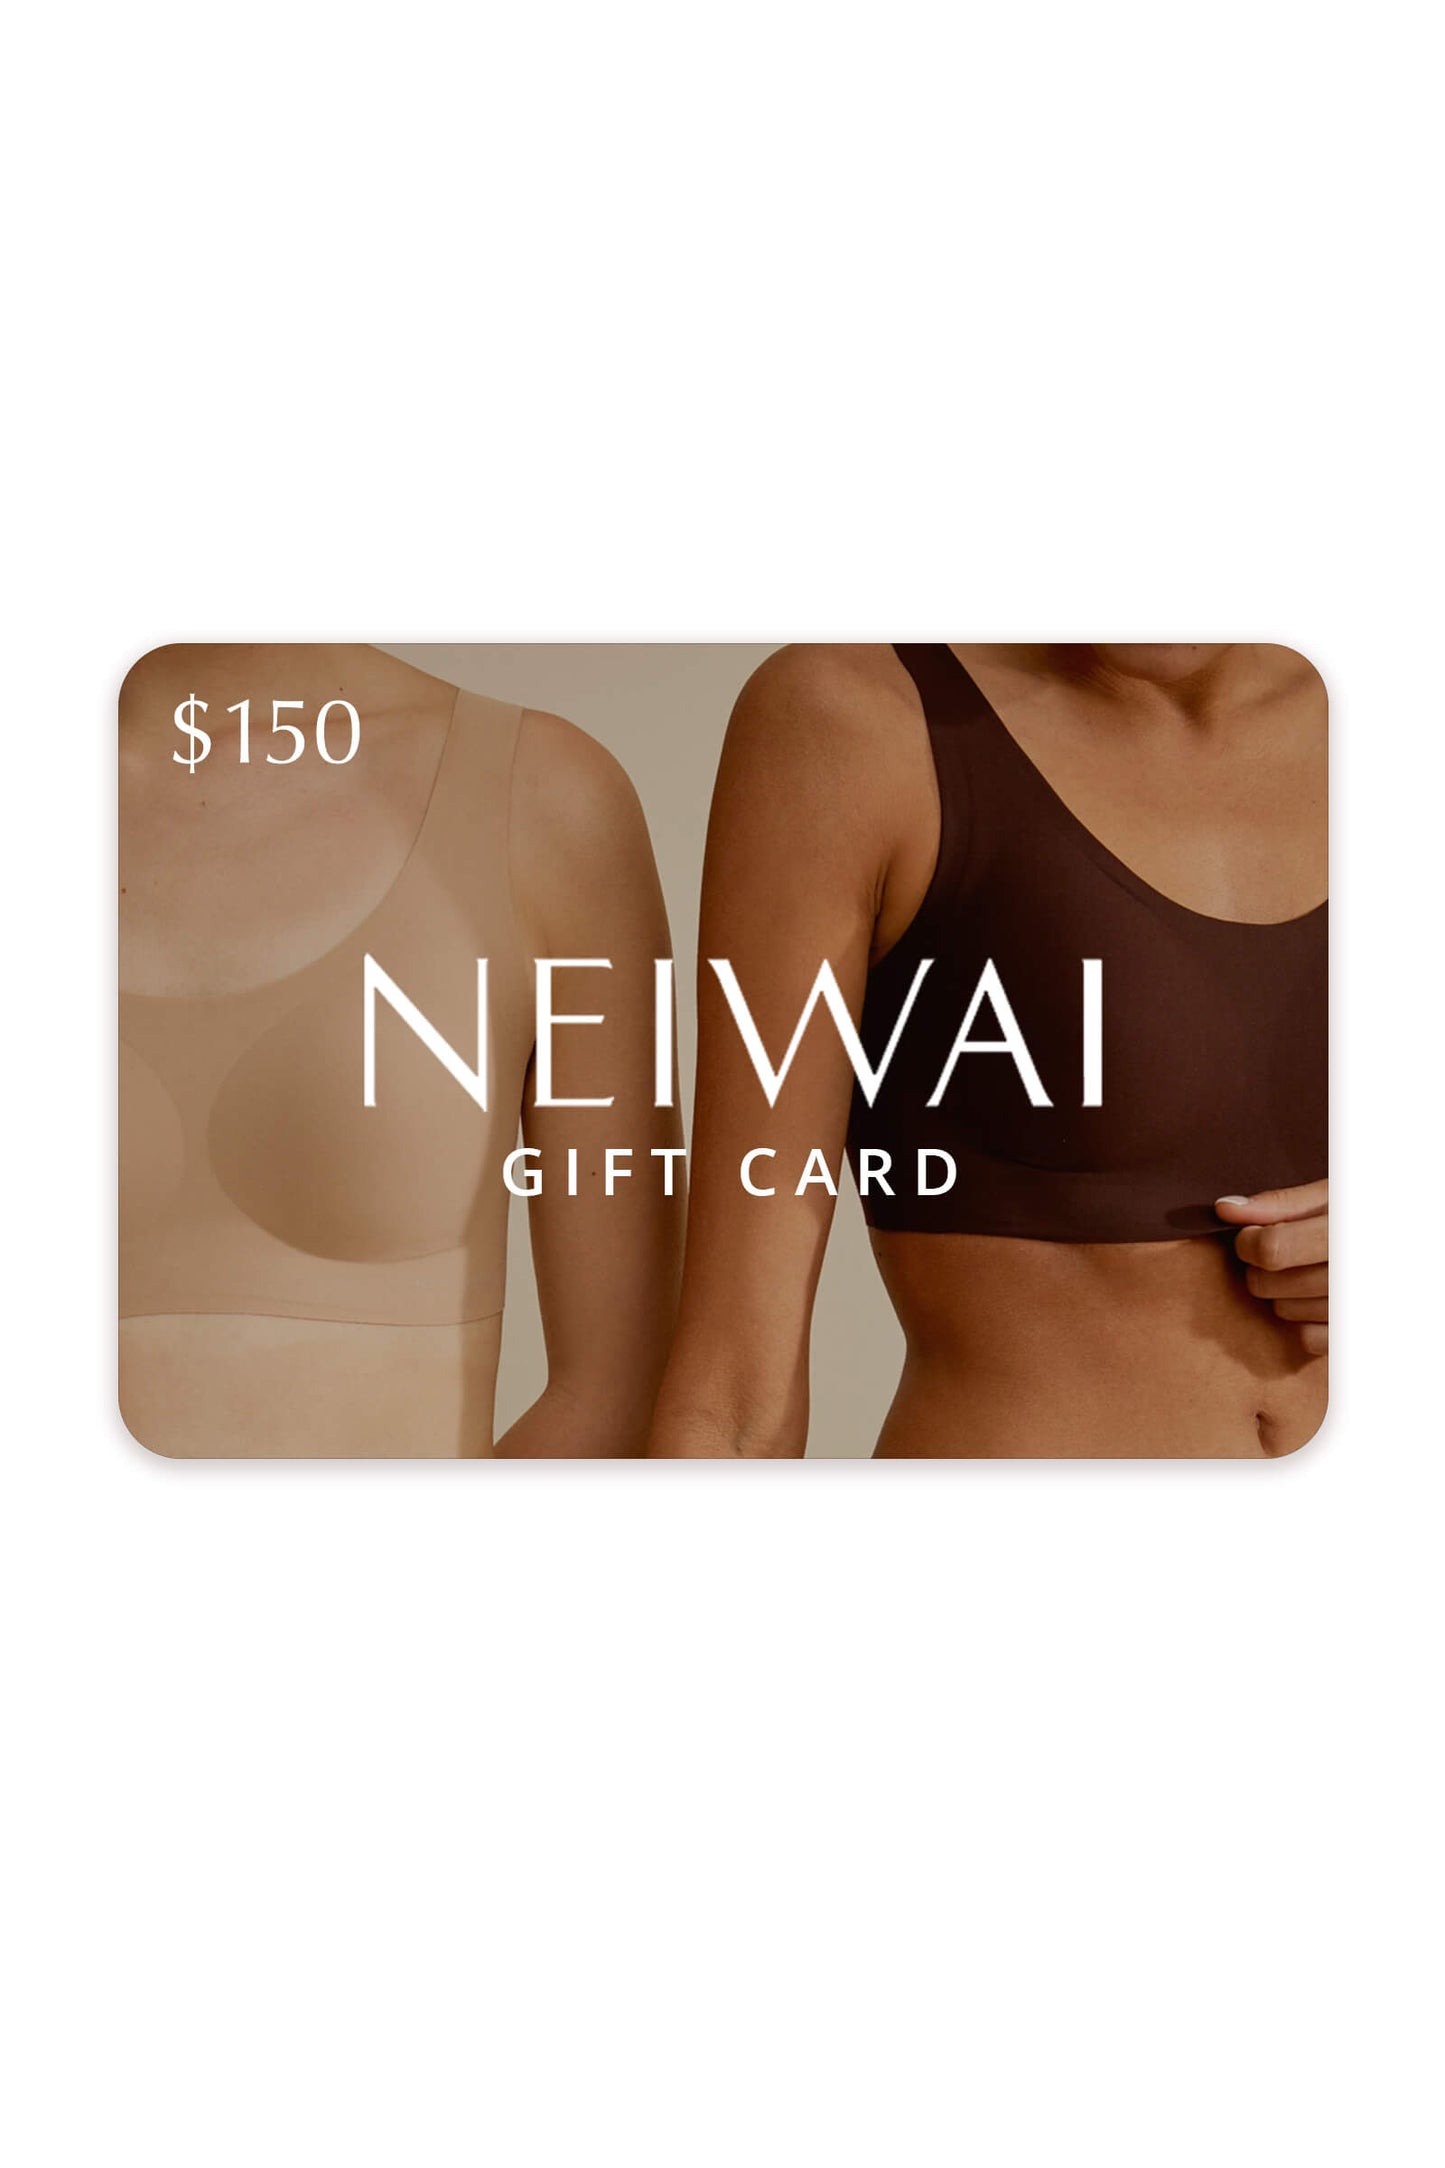 NEIWAI gift card $150